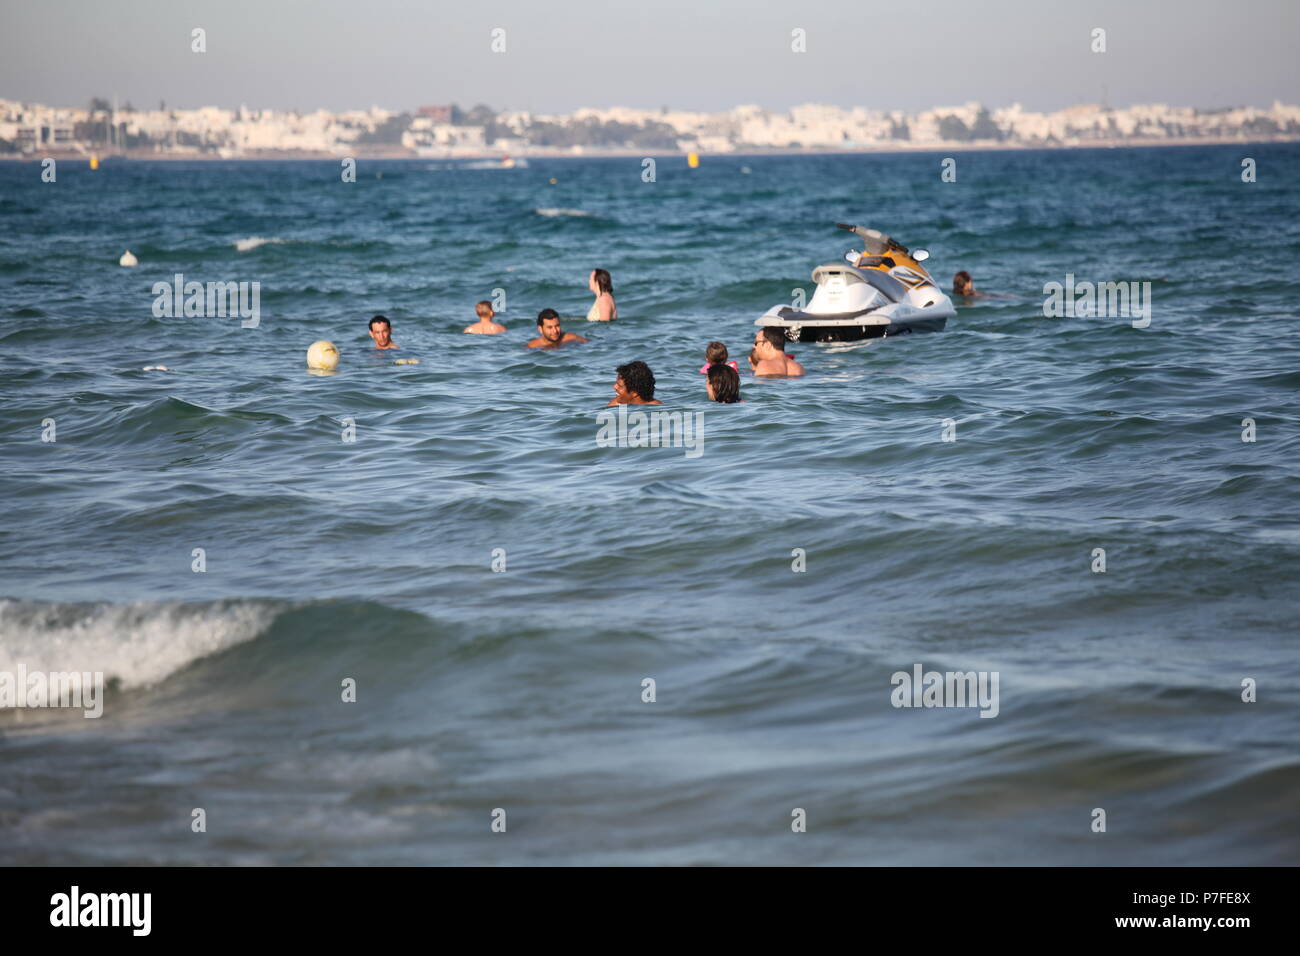 Les touristes étrangers et la population locale se baigner dans la mer Méditerranée au bord de la Tunisie à Hammamet, l'une des destinations touristiques les plus populaires Banque D'Images